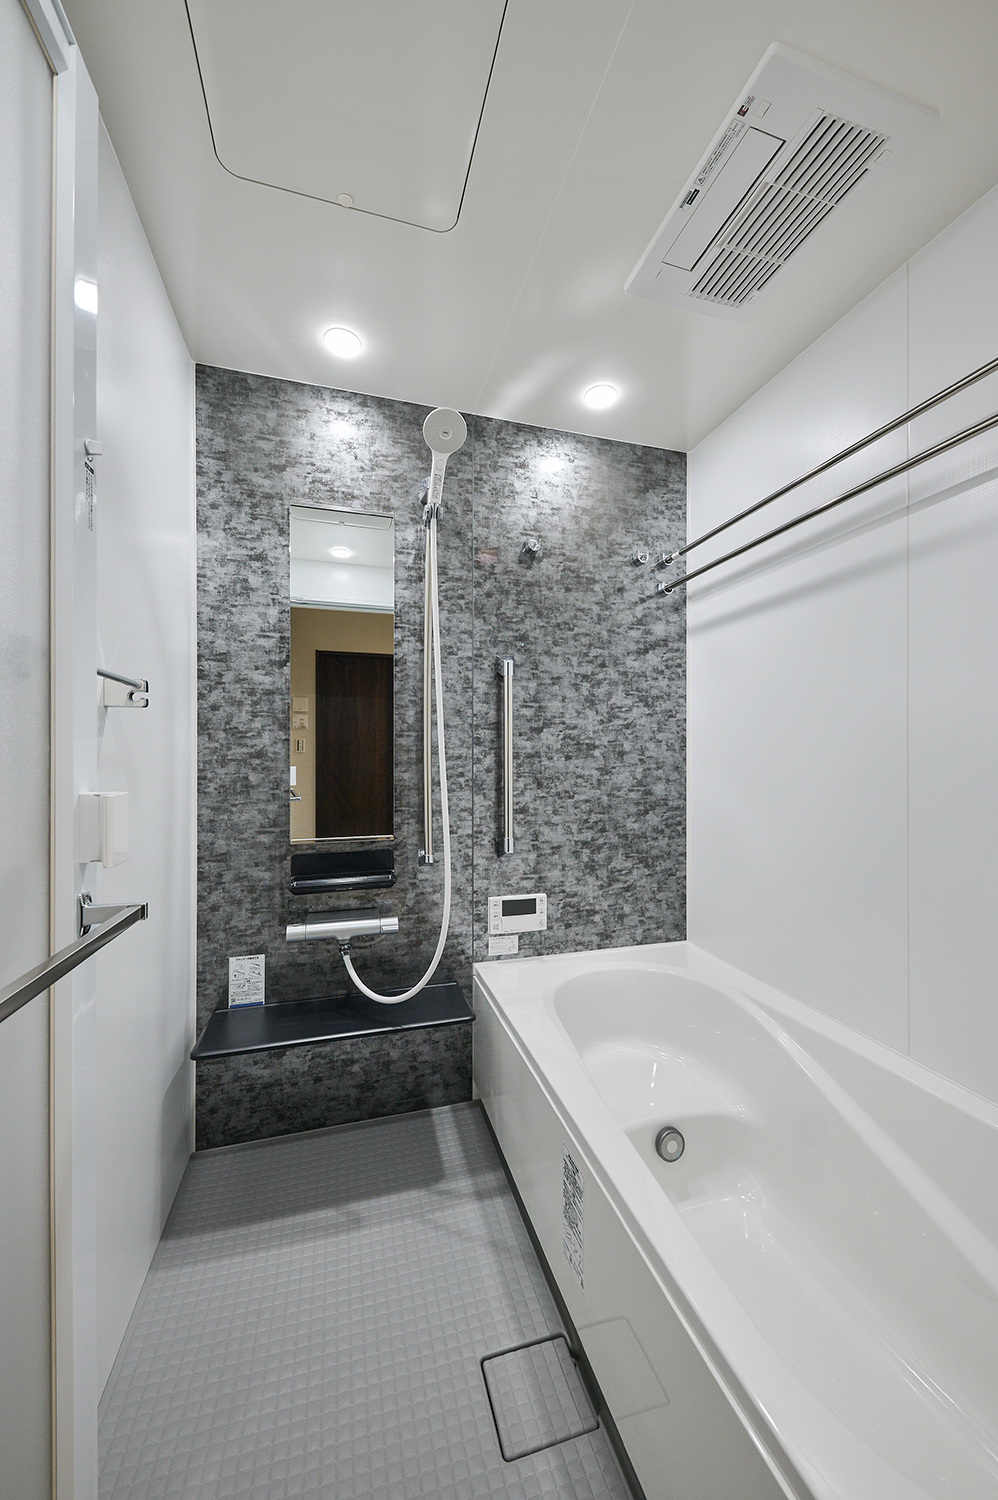 T-1／保温性の高い浴槽に水捌けの良い床、お掃除楽々排水溝など使いやすさと快適性を兼ね備えた癒しの空間です。